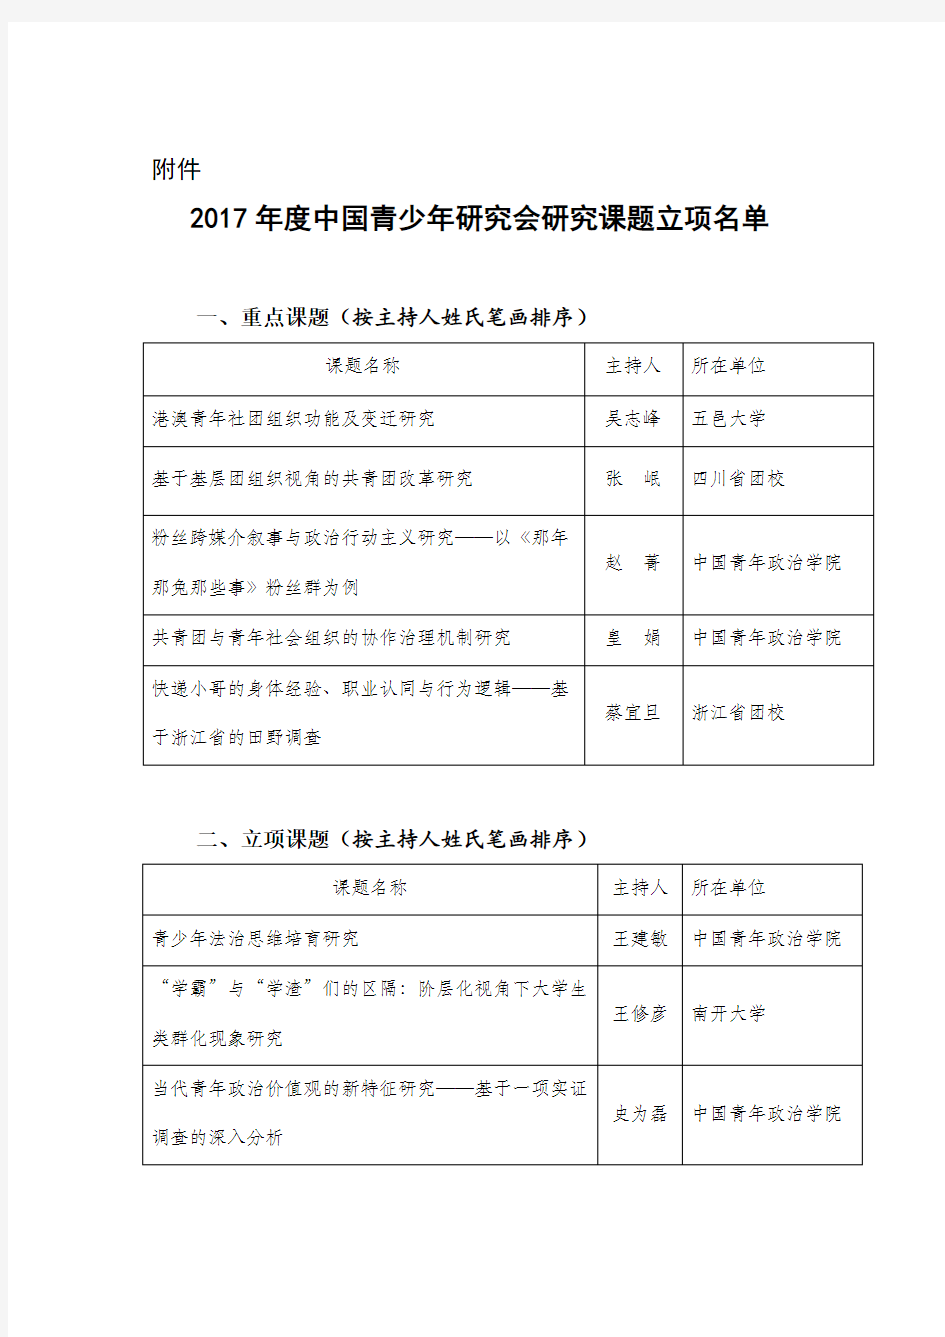 2017年度中国青少年研究会研究课题立项名单